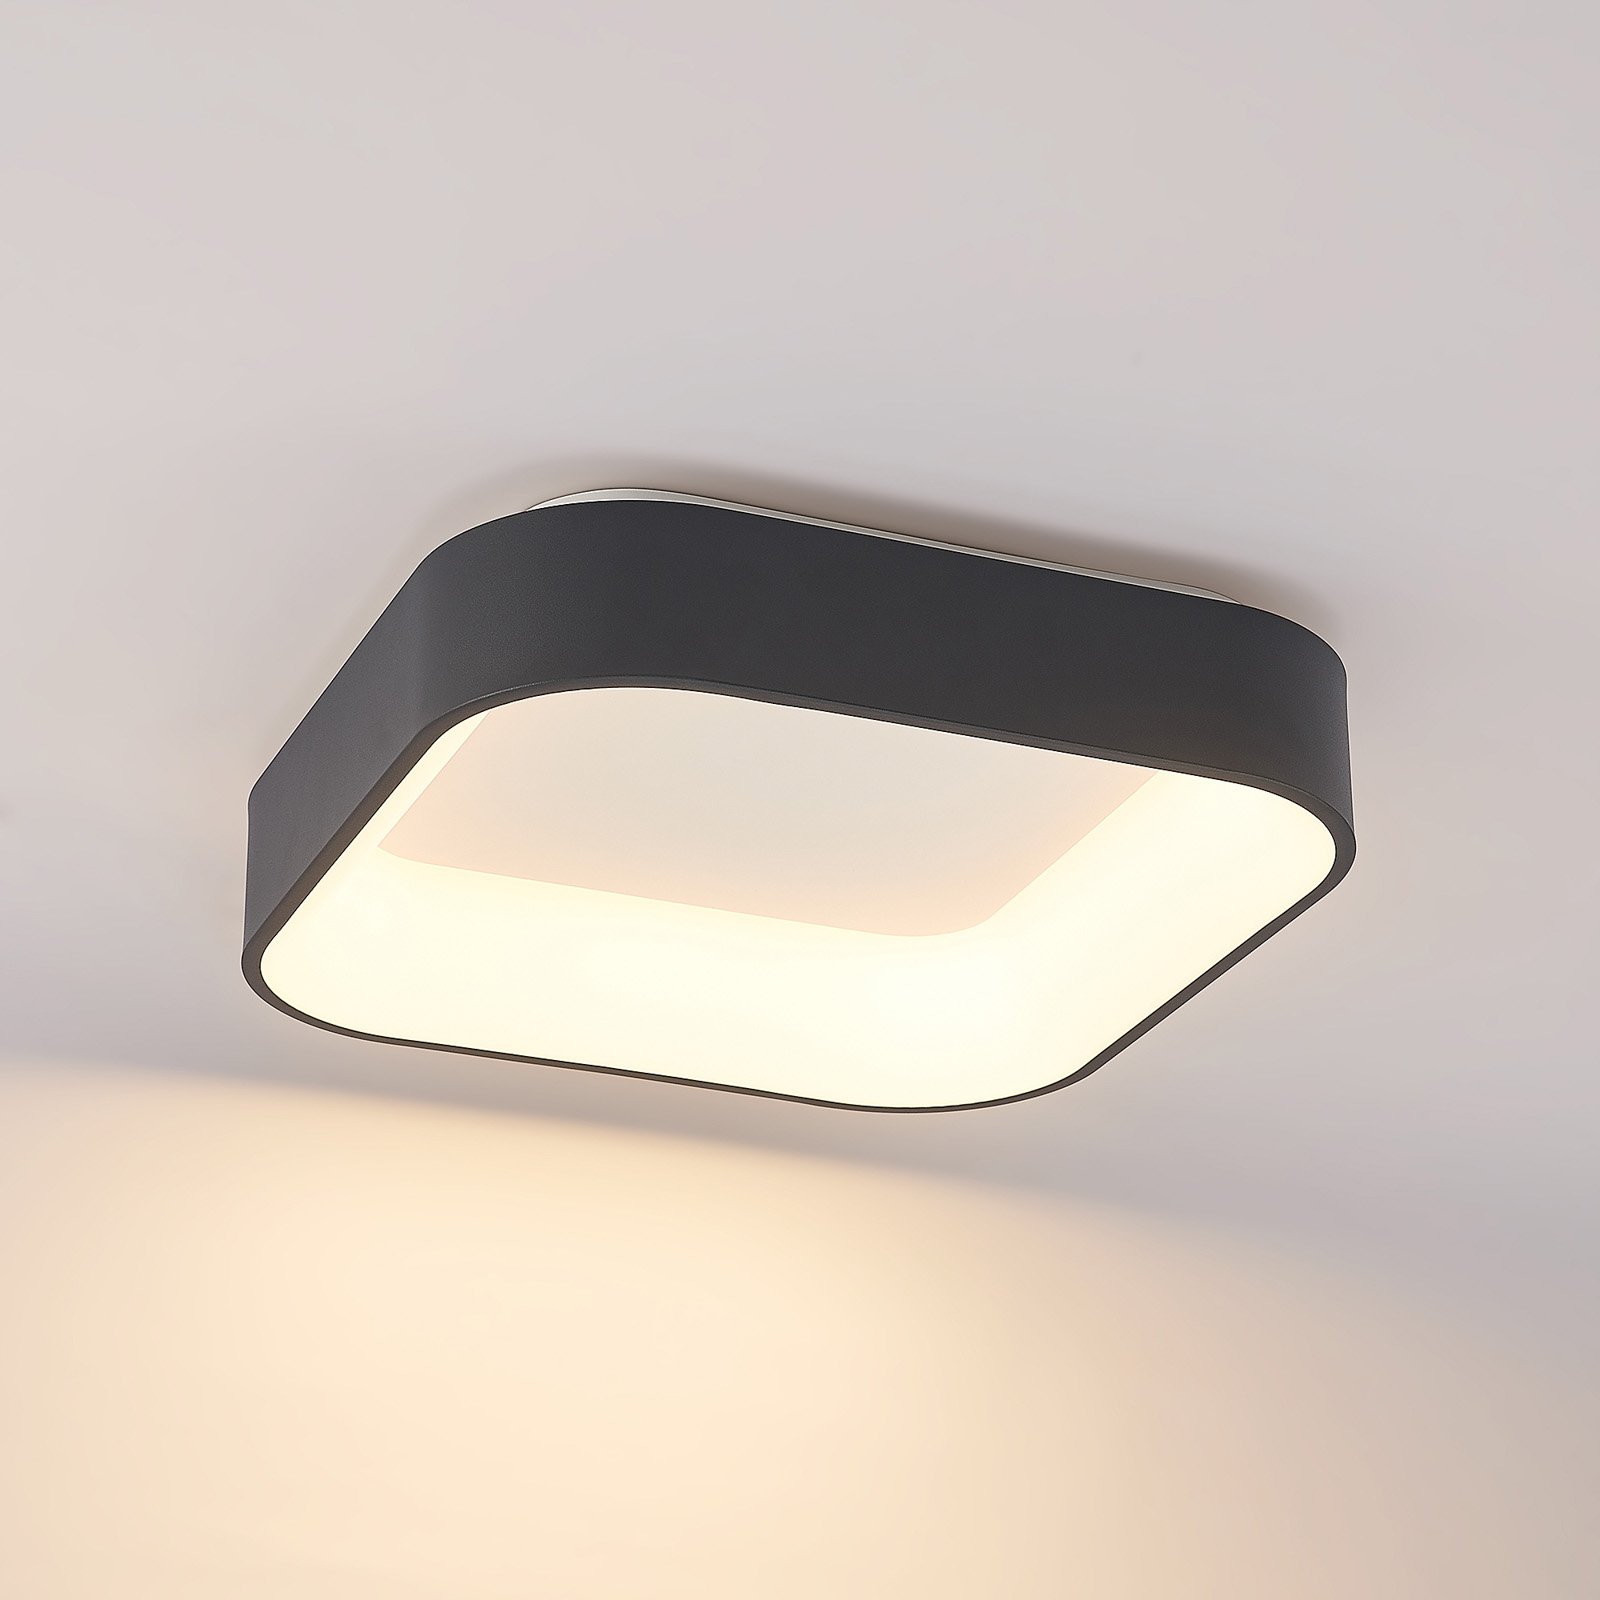 Arcchio Aleksi plafonnier LED, 45 cm, angulaire